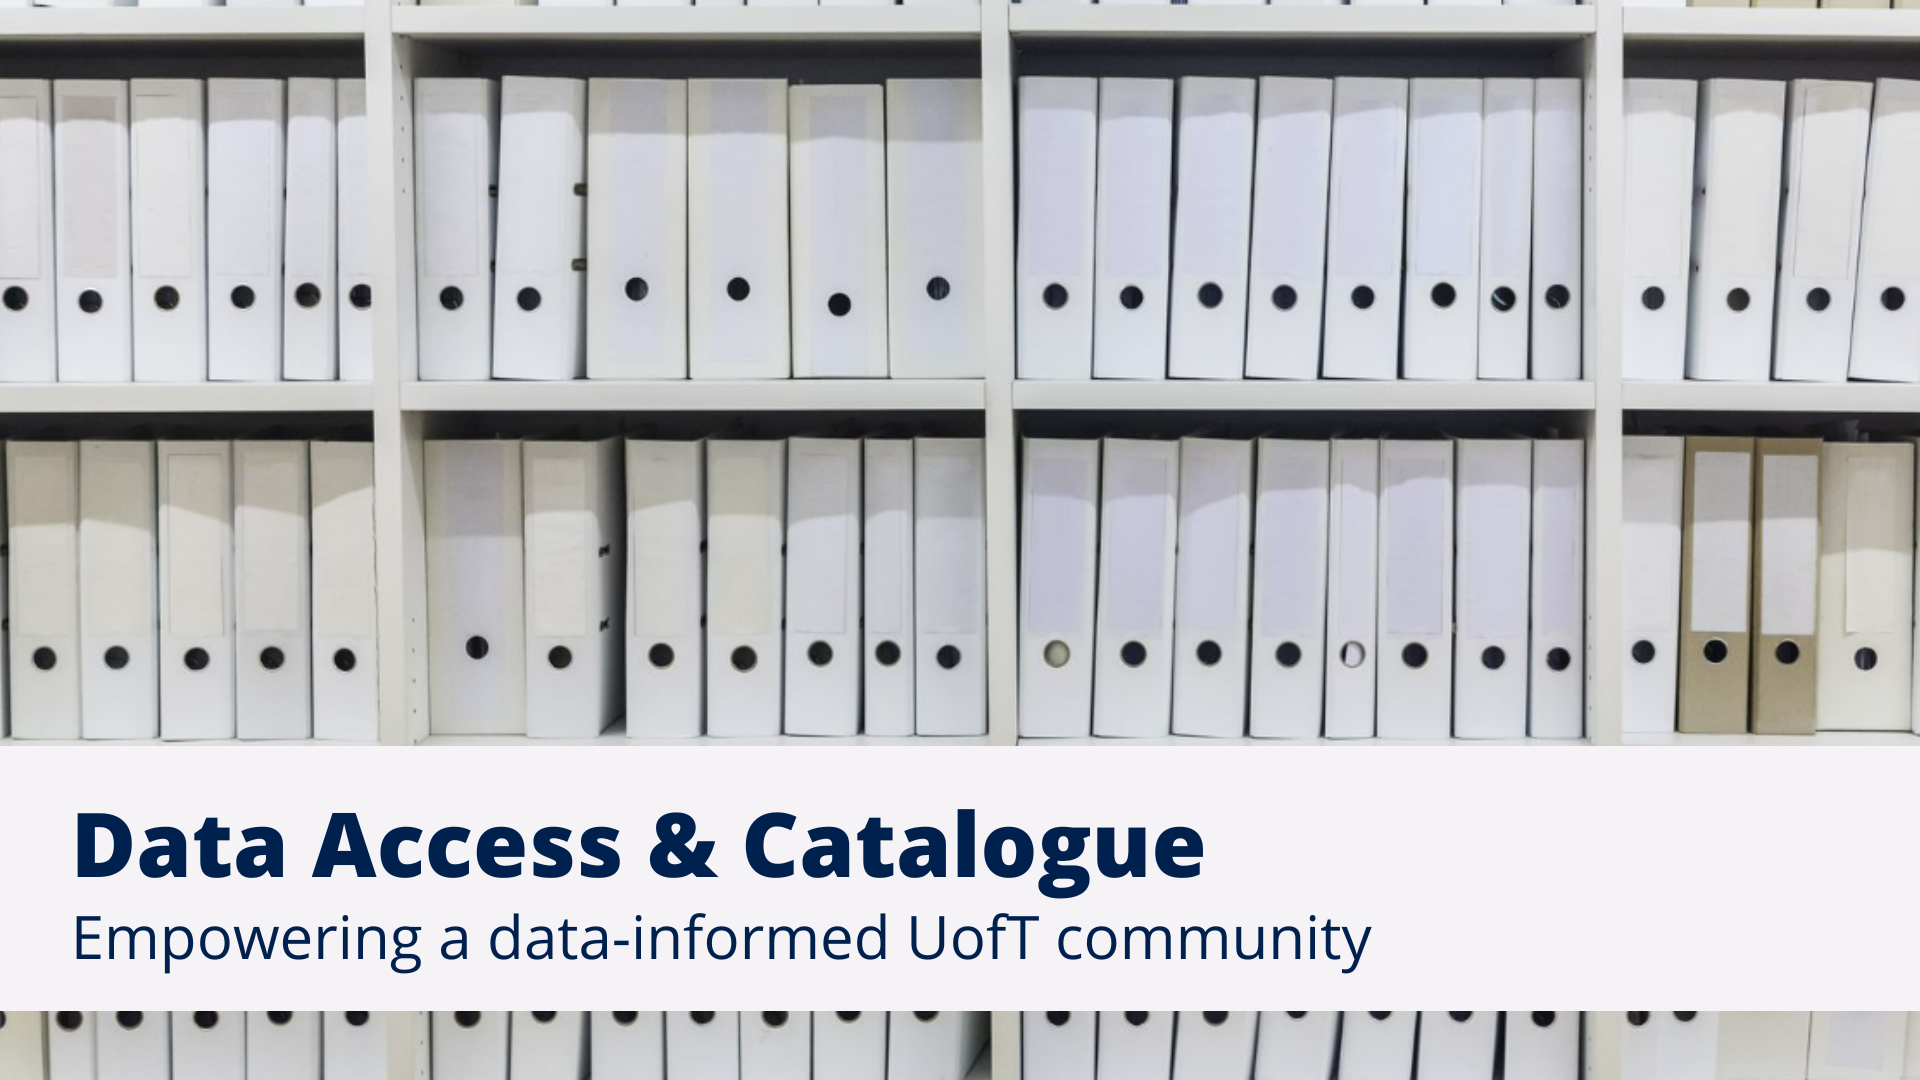 Data Access & Catalogue slide